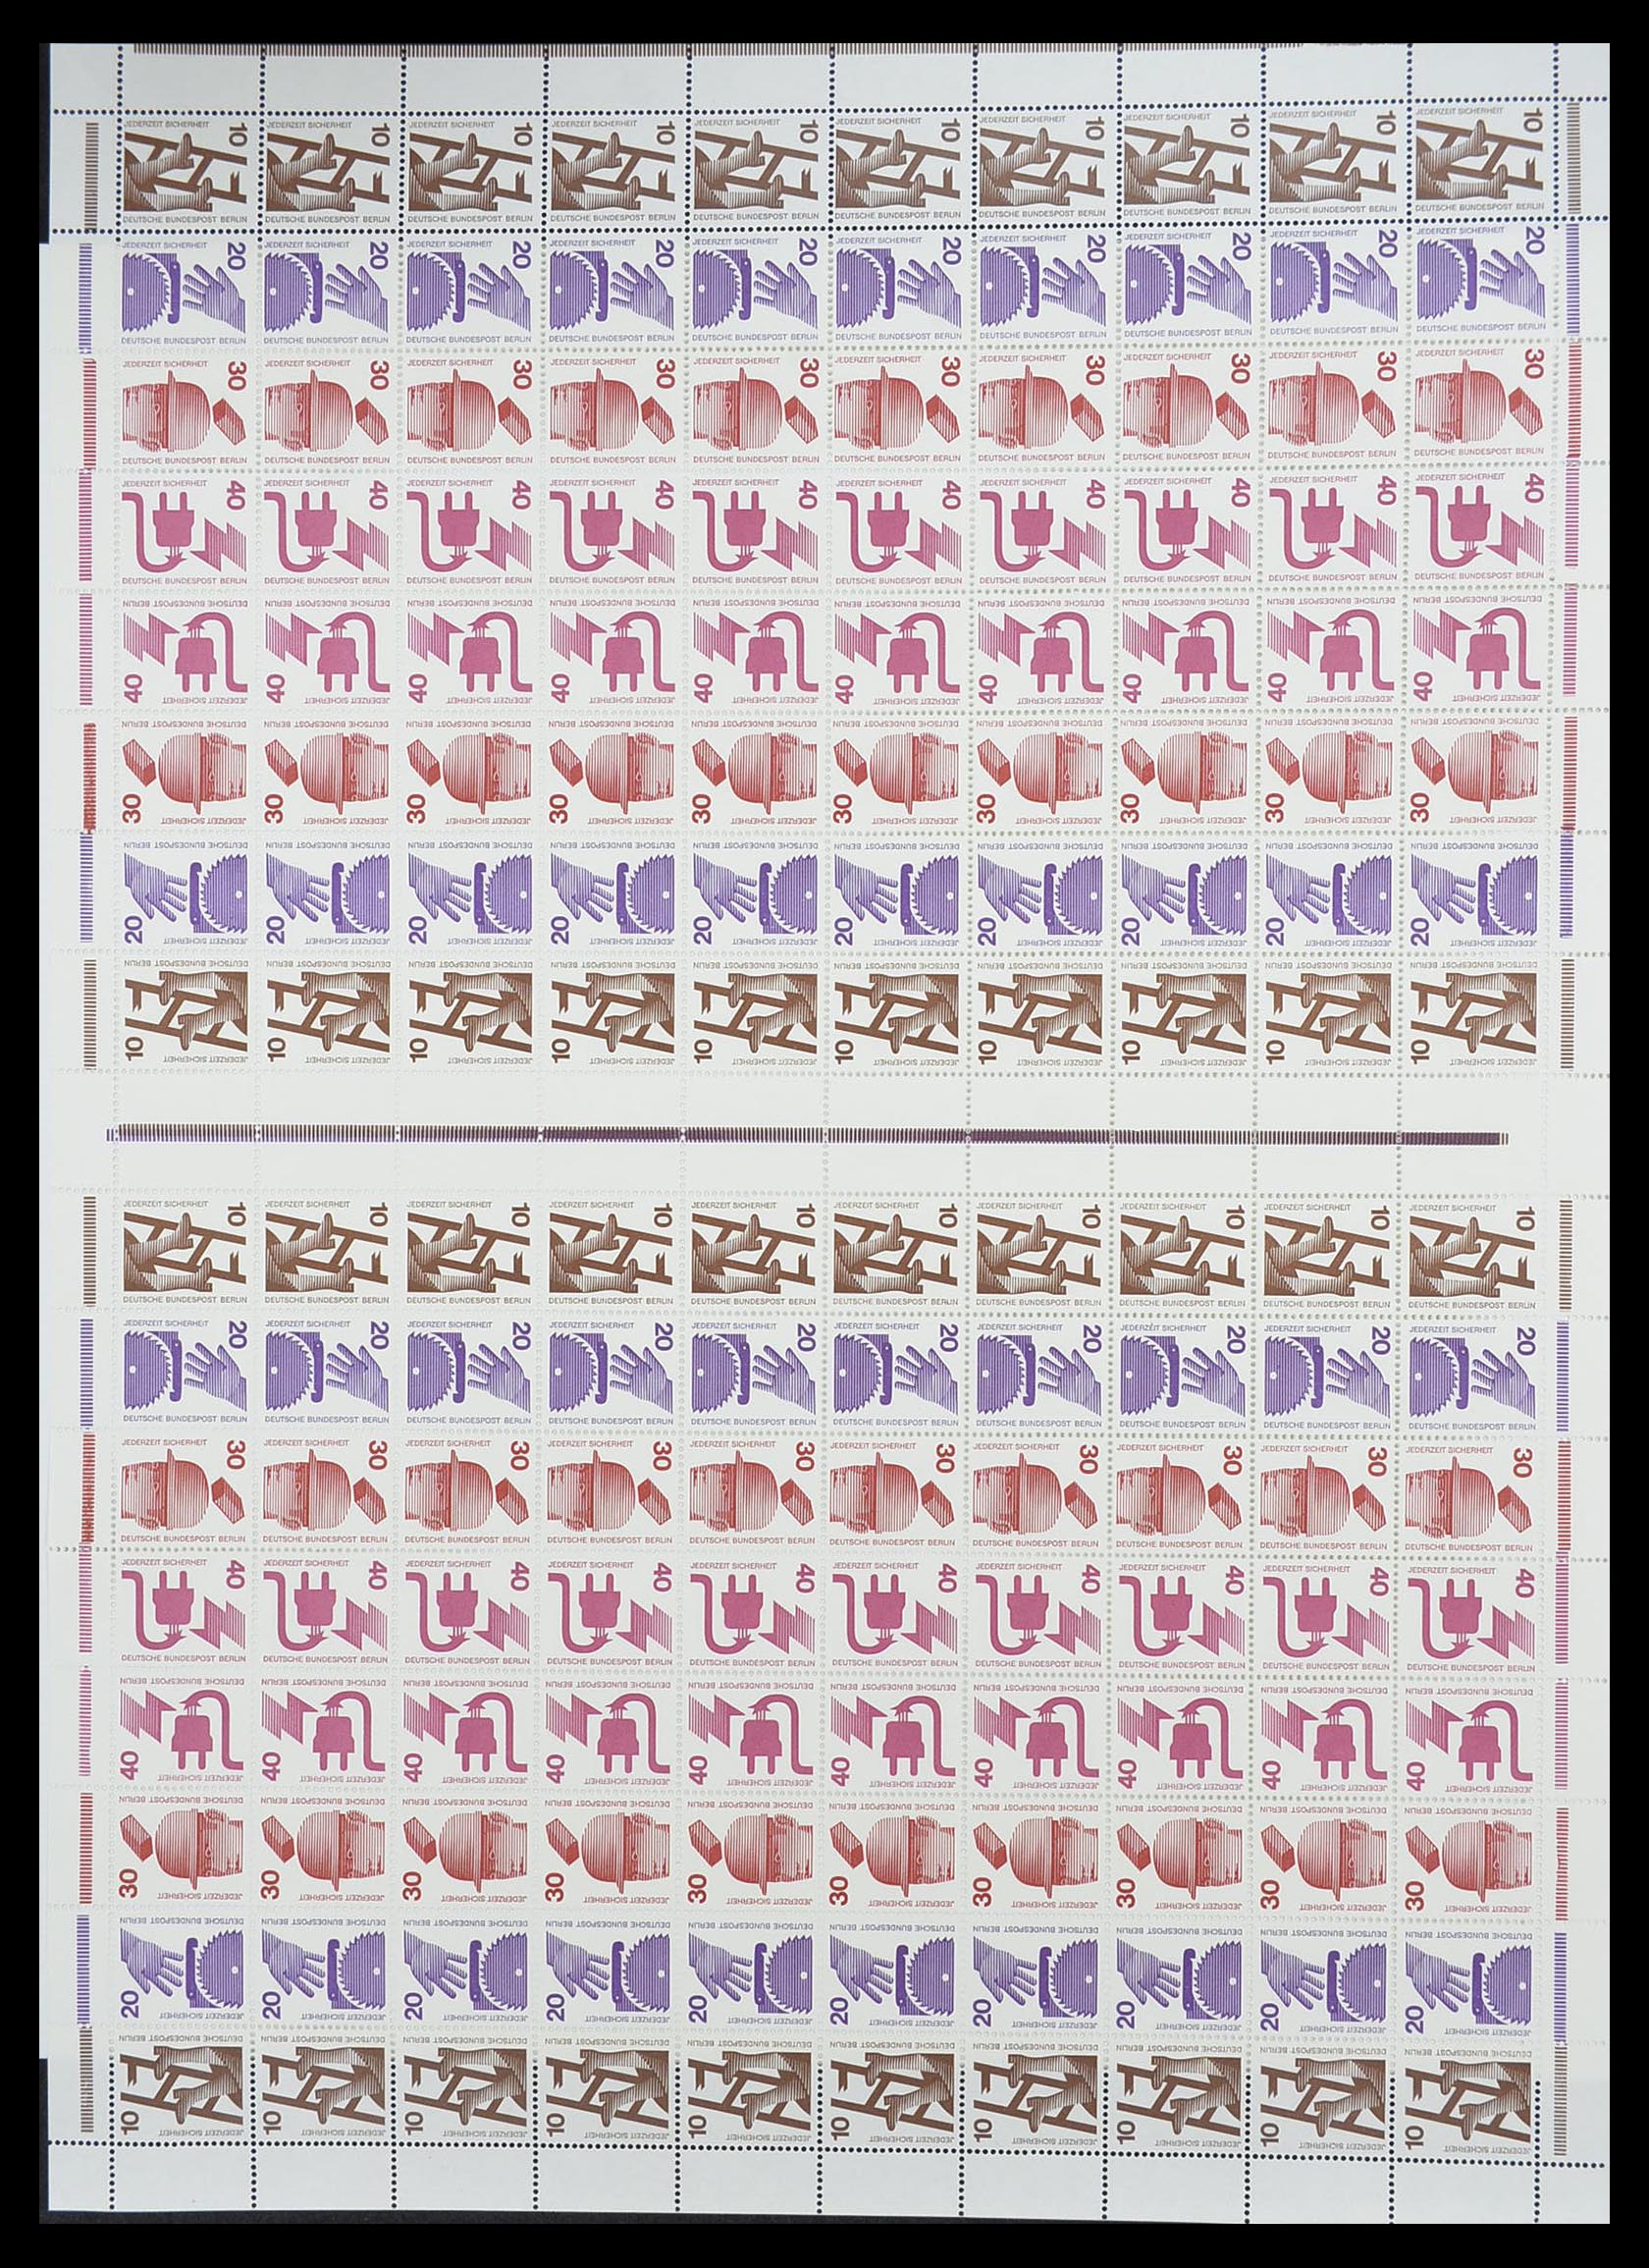 33753 005 - Stamp collection 33753 Bund and Berlin markenheftchenbogen 1966-1973.